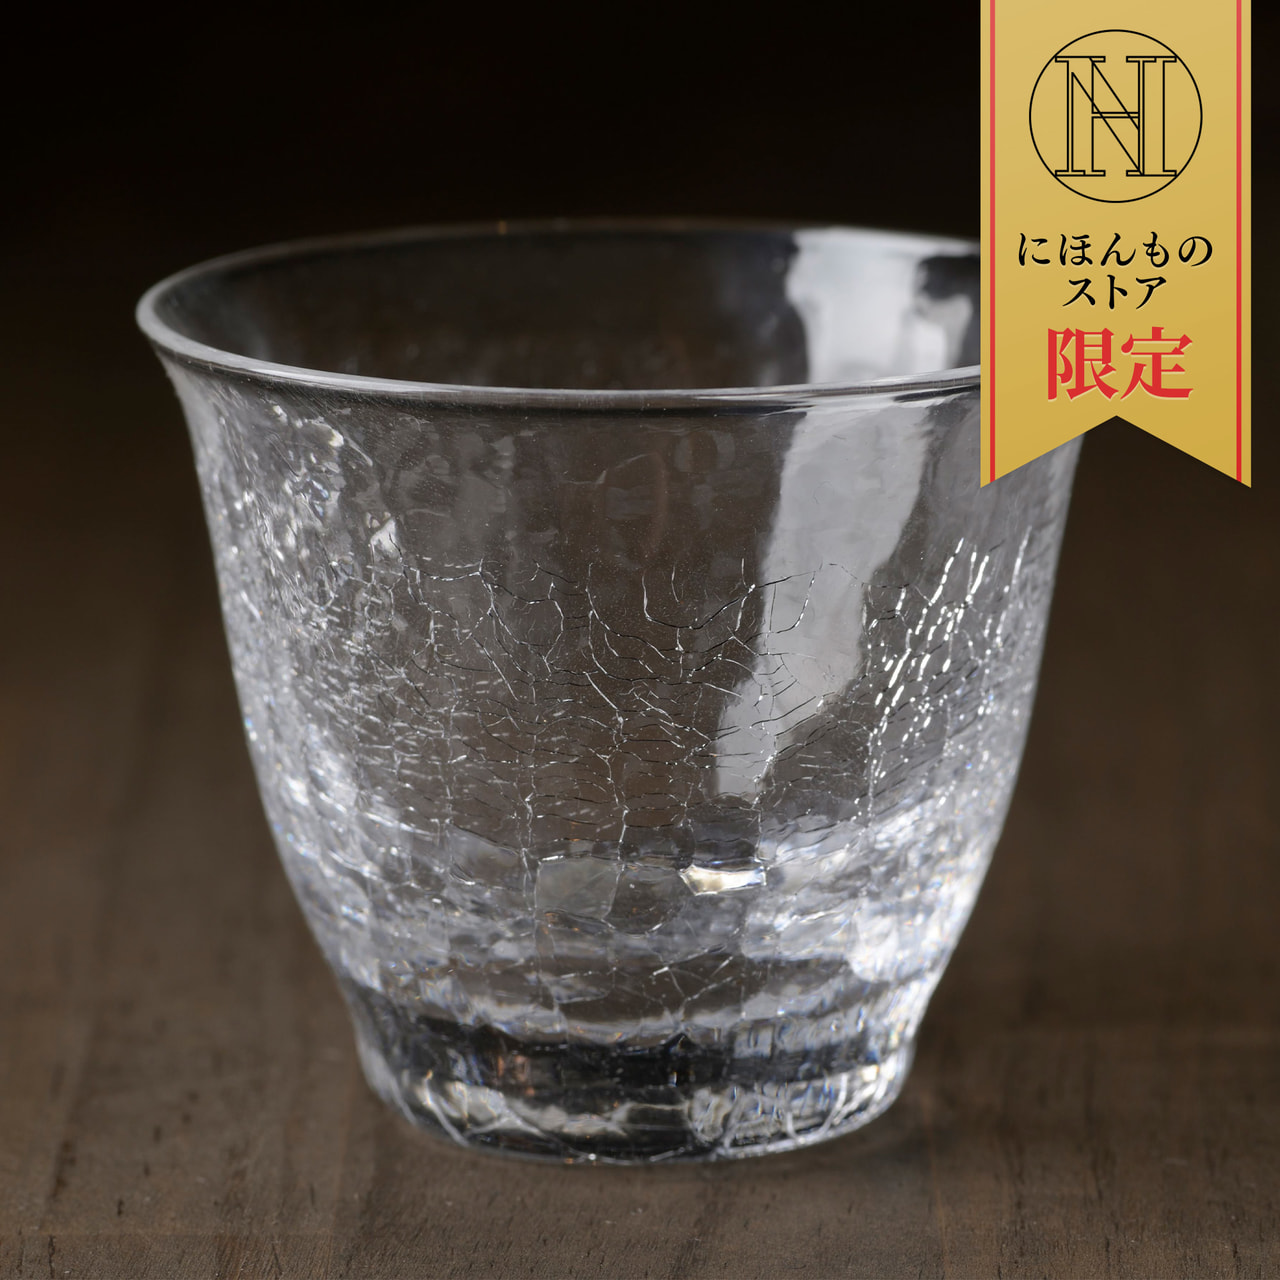 にほんものストアオリジナル 氷紋硝子 SAKEグラス 2個セット ※396円お得